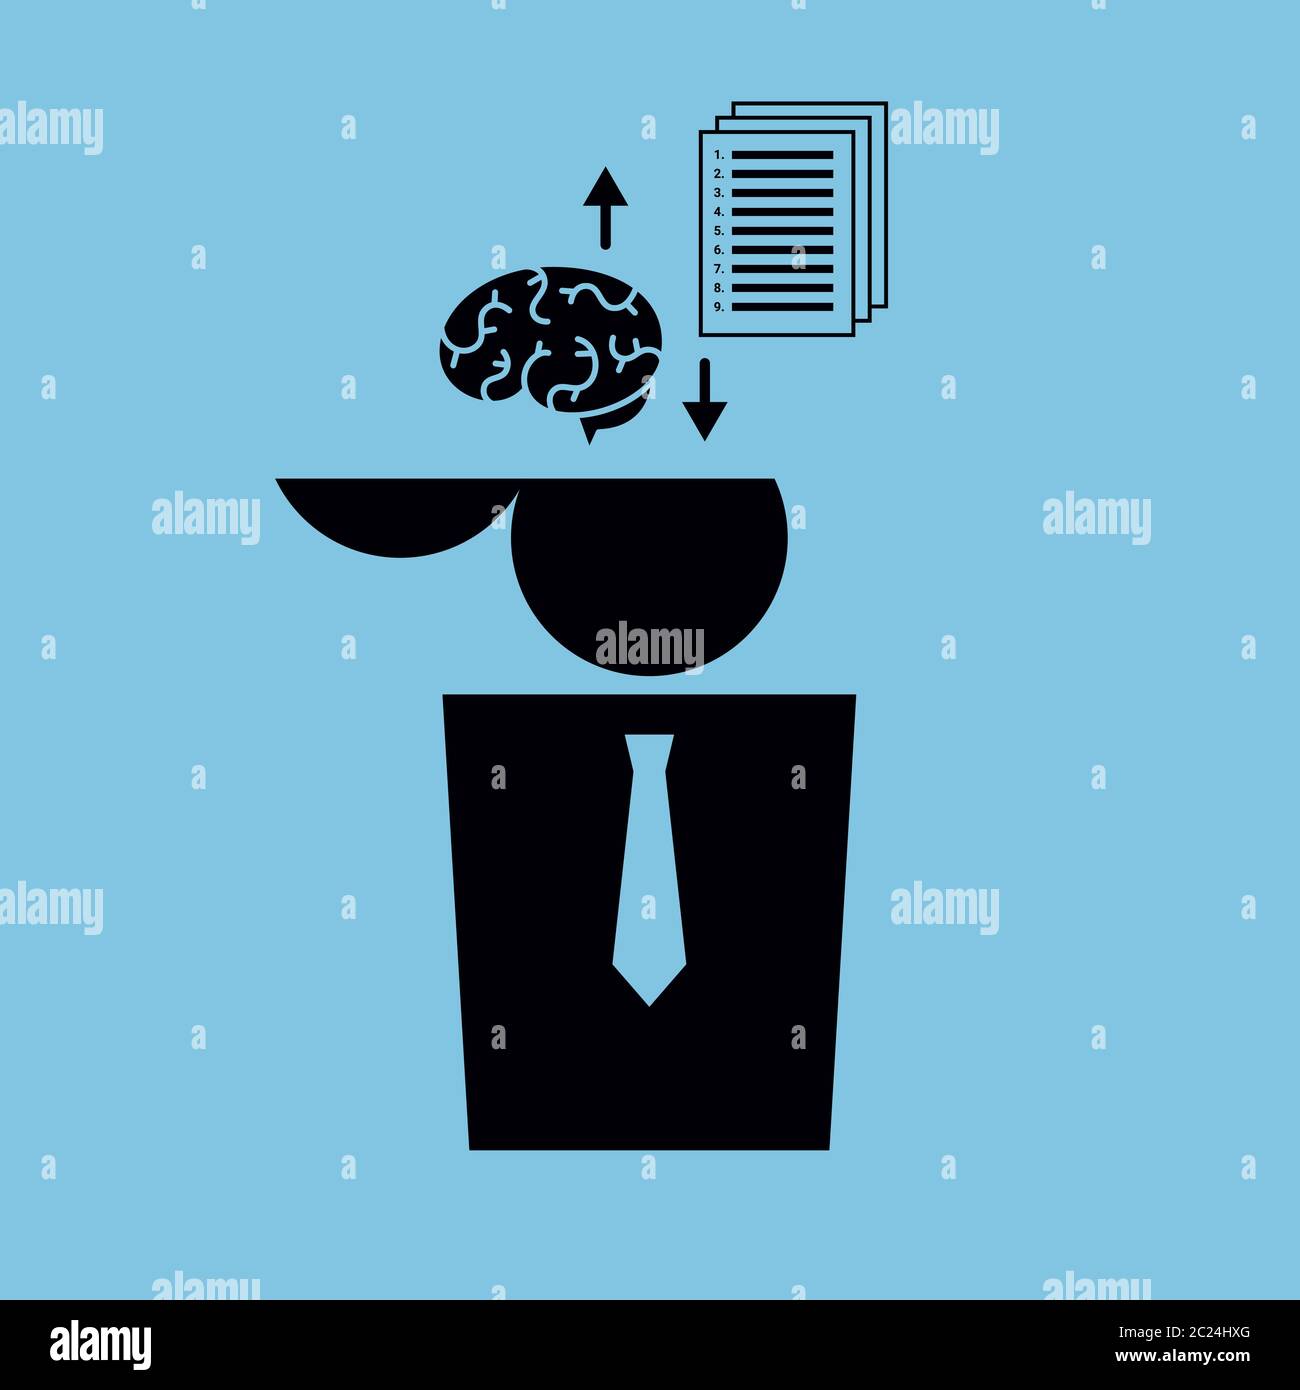 Vektor minimalistische Illustration. Ikone eines Menschen, dessen Gehirn durch eine Zeitung mit einer Liste von Anweisungen ersetzt wird. Schwarz auf Blau. Quadratisches Format. Stock Vektor